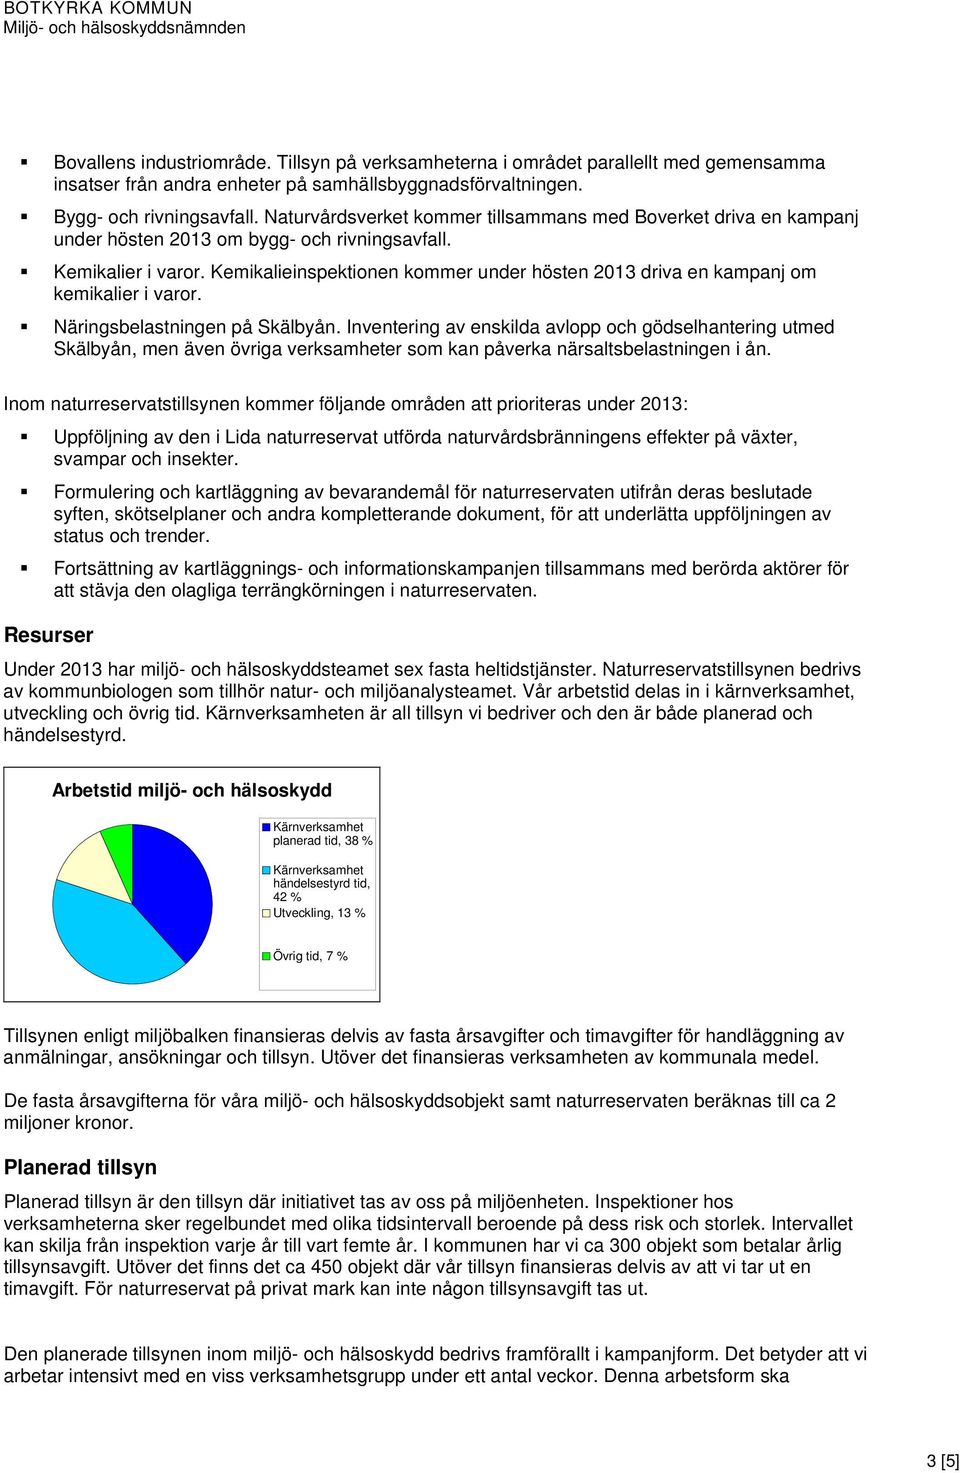 Kemikalieinspektionen kommer under hösten 2013 driva en kampanj om kemikalier i varor. Näringsbelastningen på Skälbyån.